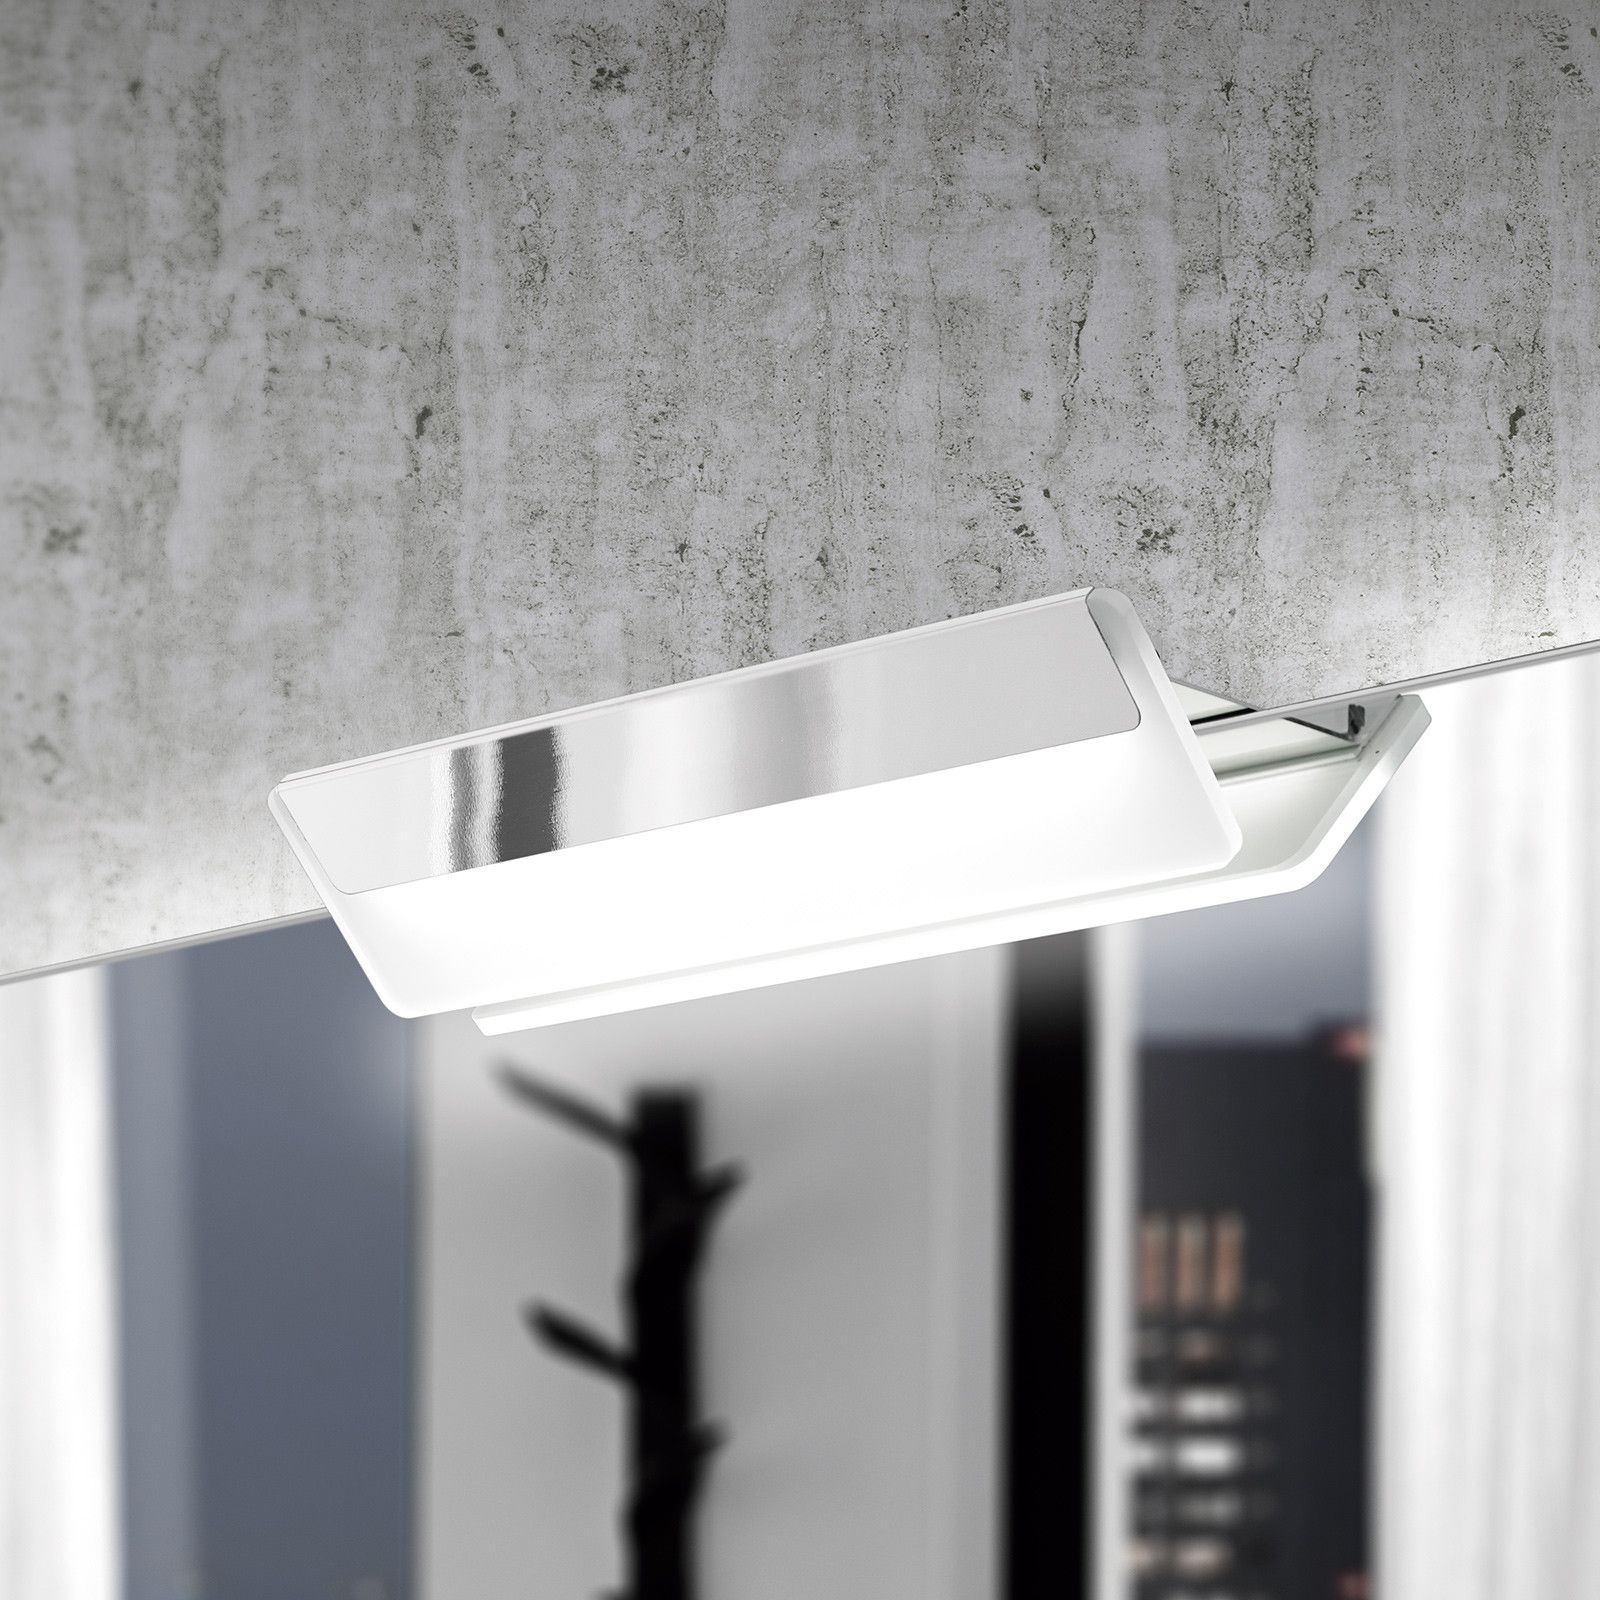 Aplike - Espejo de Baño Rectangular con Luz LED - Función AntiVaho - Luz  Blanca Neutra (4000K) - 80 x 70cm